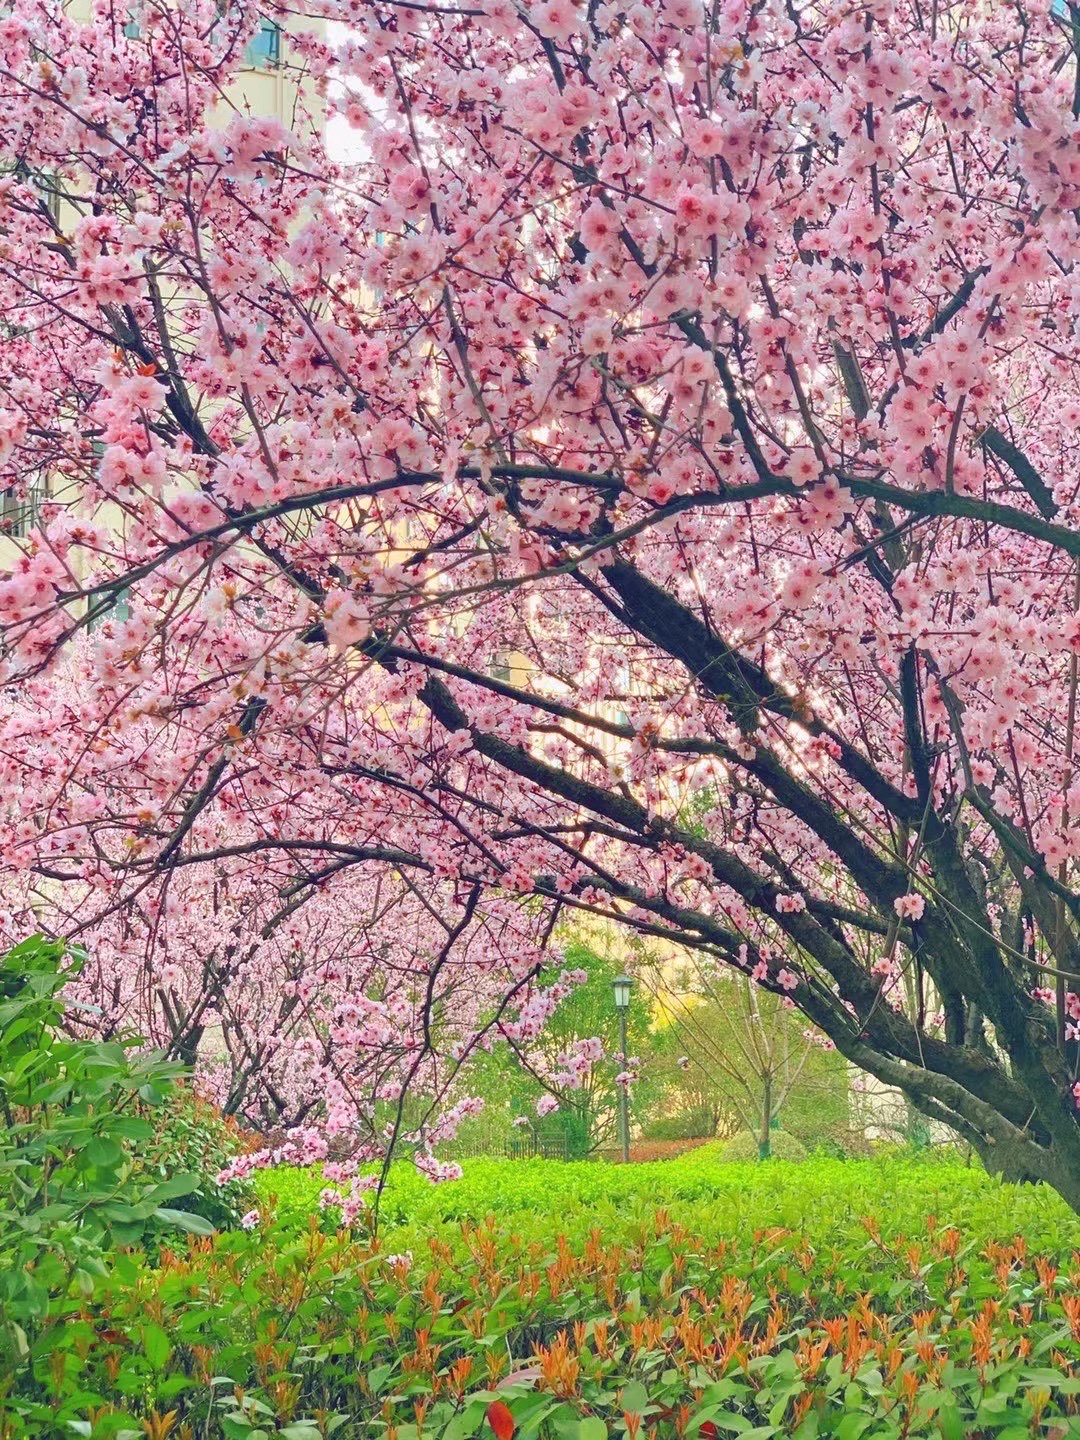 又到了桃花盛开的季节，景色特别美